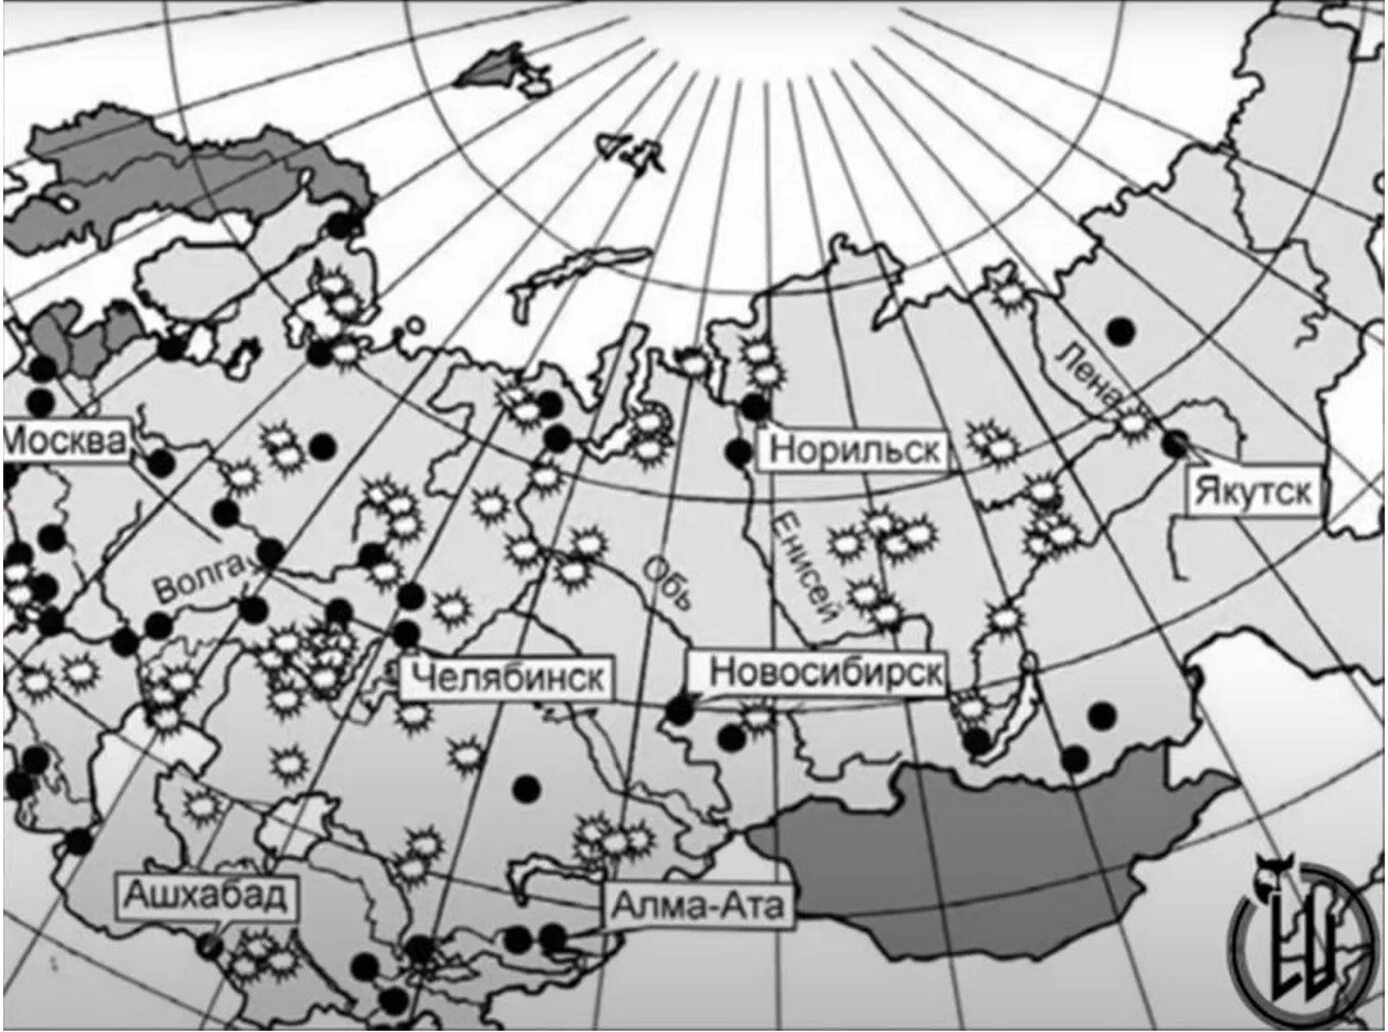 Карта испытаний. Карта мирных ядерных взрывов в СССР. Карта ядерных испытаний СССР. Подземные ядерные взрывы в СССР карта. Карта ядерных взрывов на территории СССР.